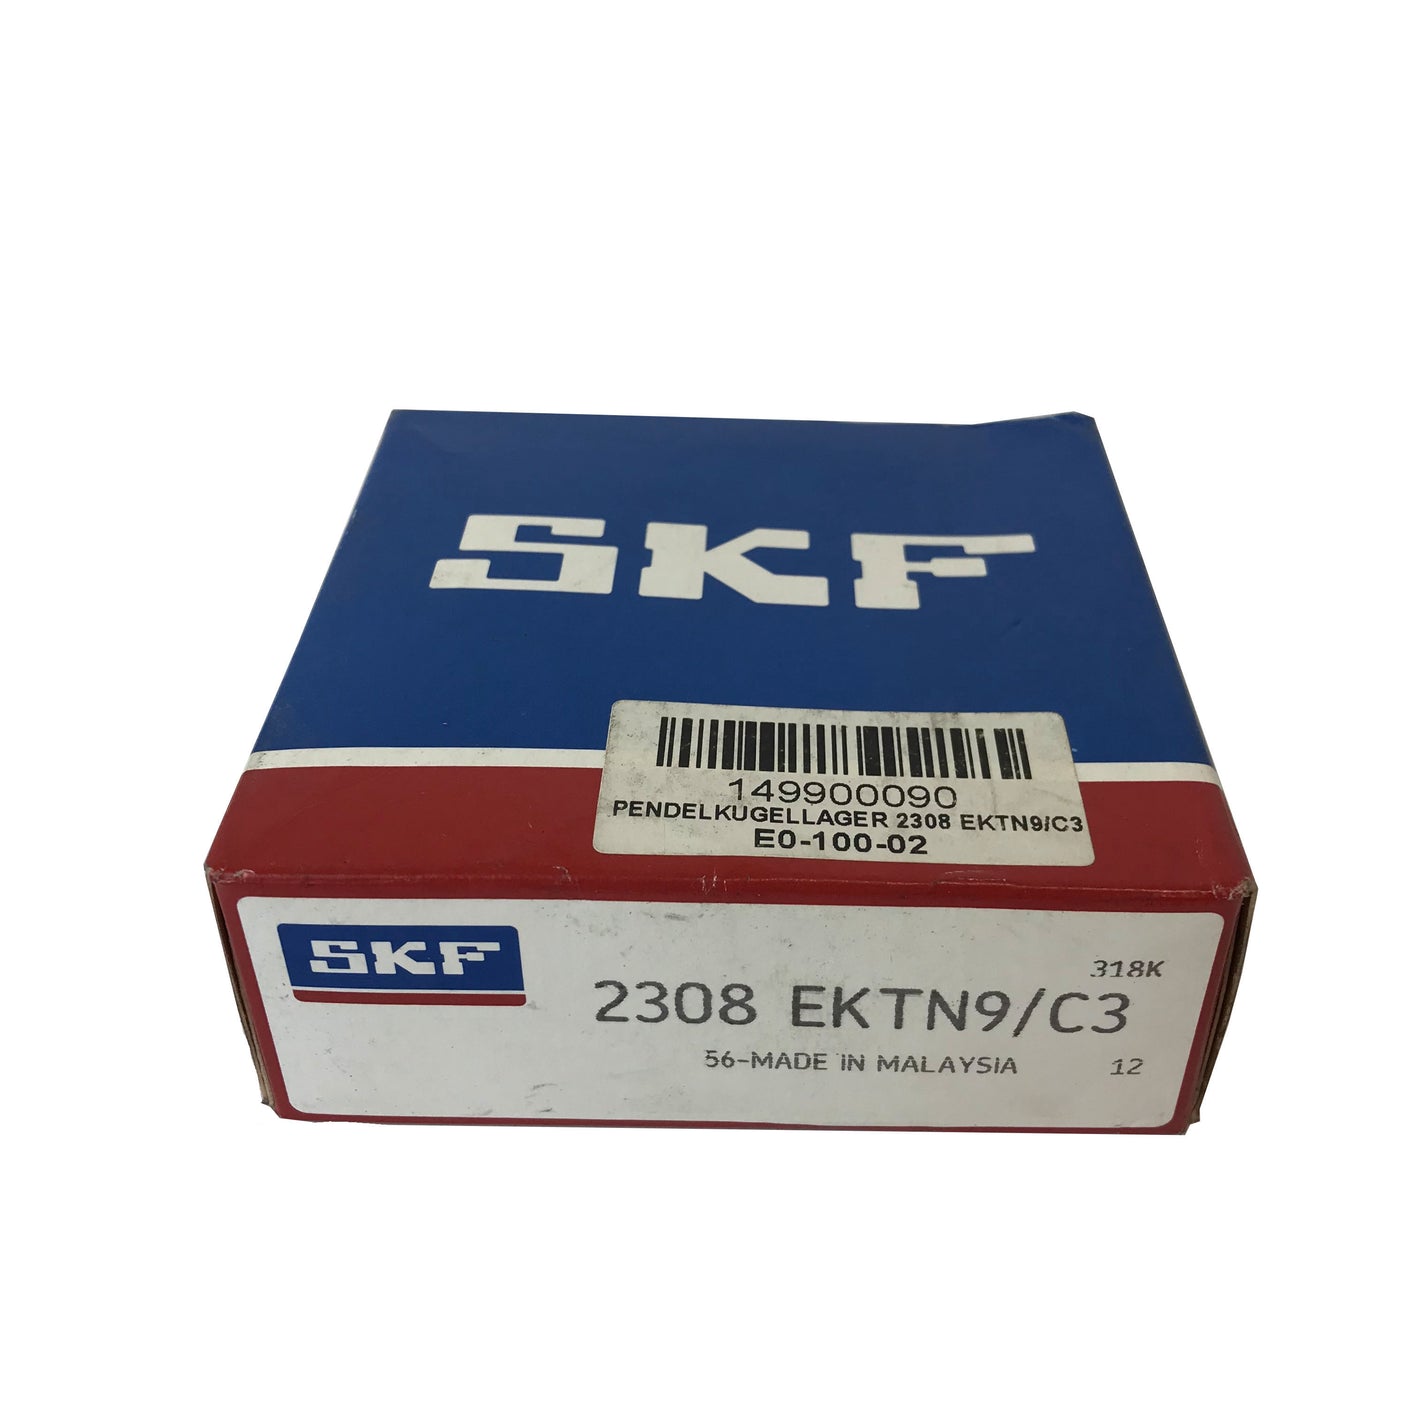 SKF 2308 EKTN9/C3 35825 self-aligning ball bearing 